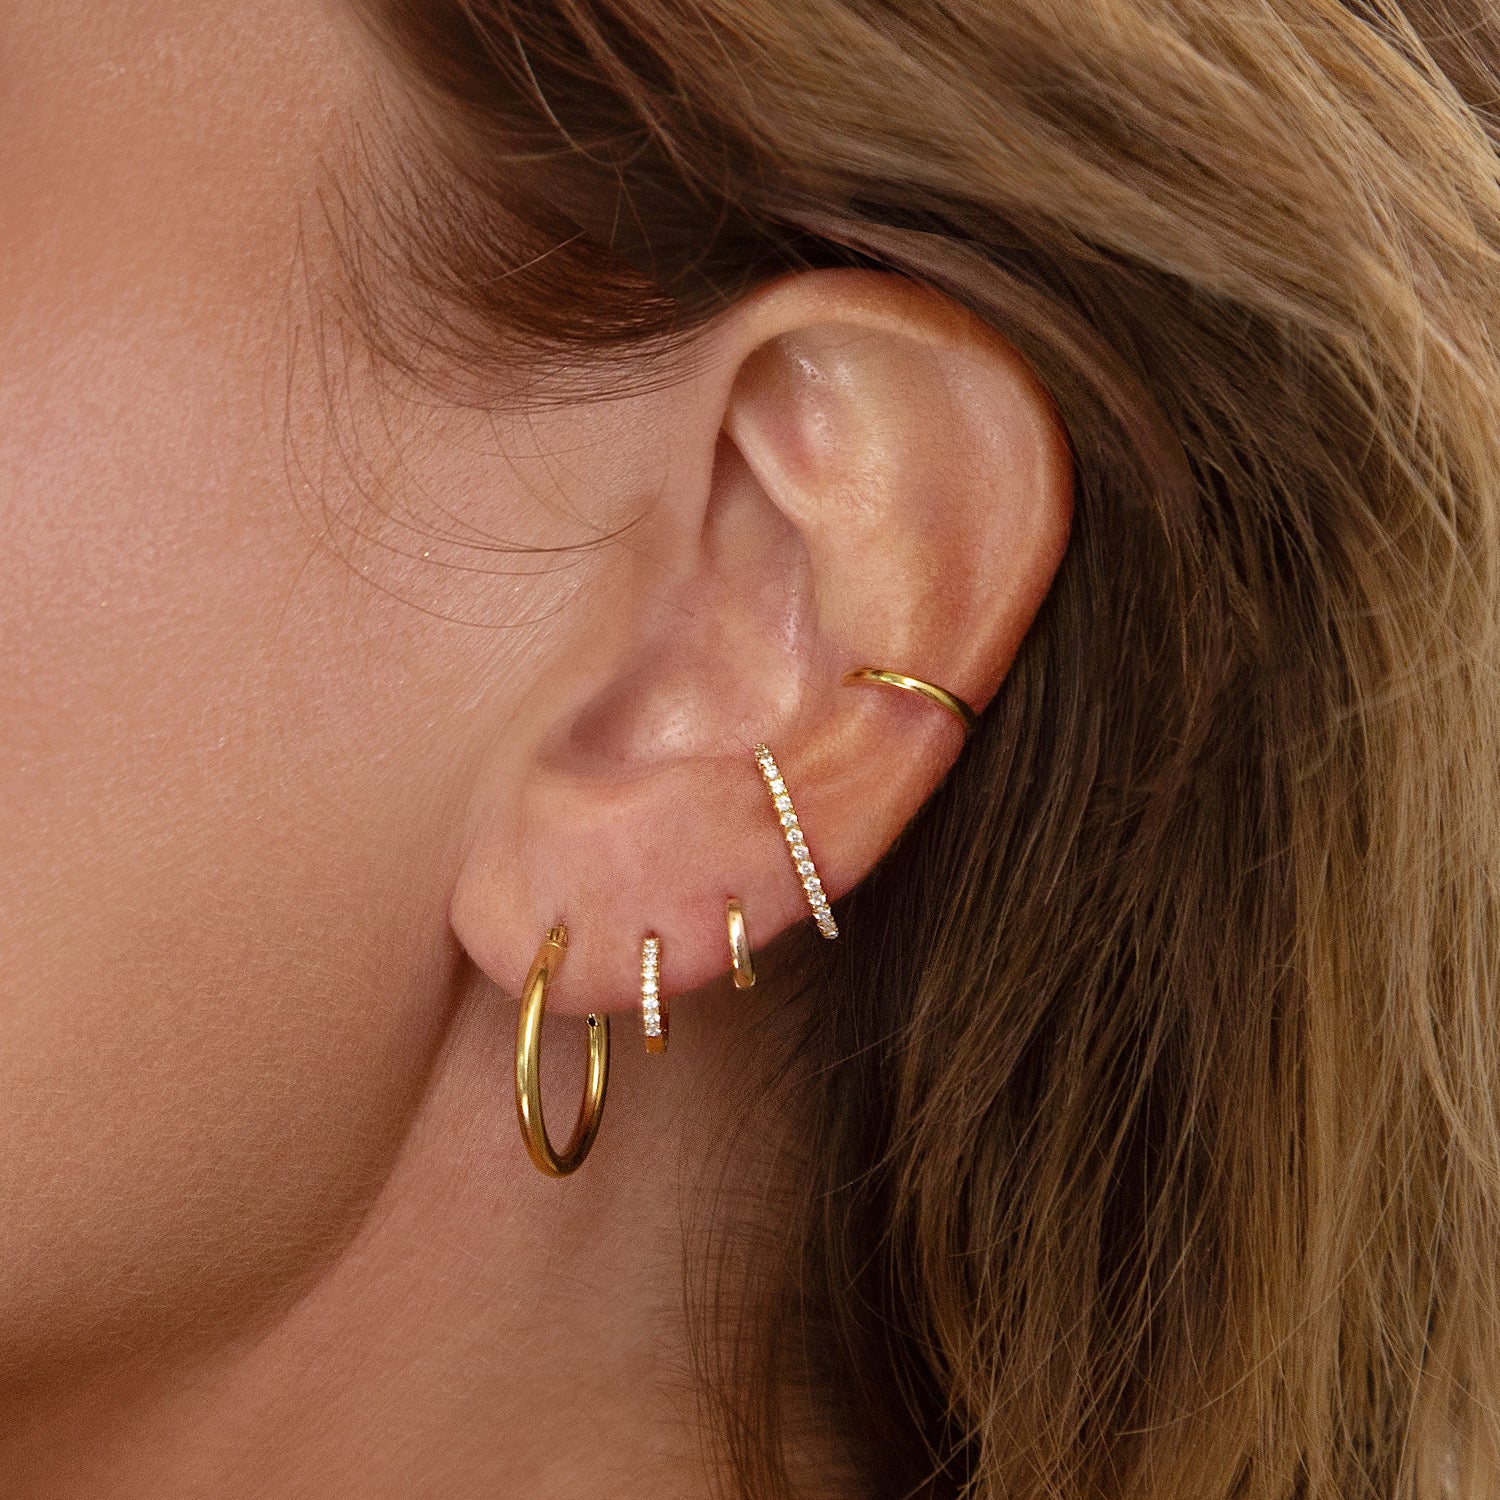 We Tested Top Rated Gold Hoop Earrings & Huggies